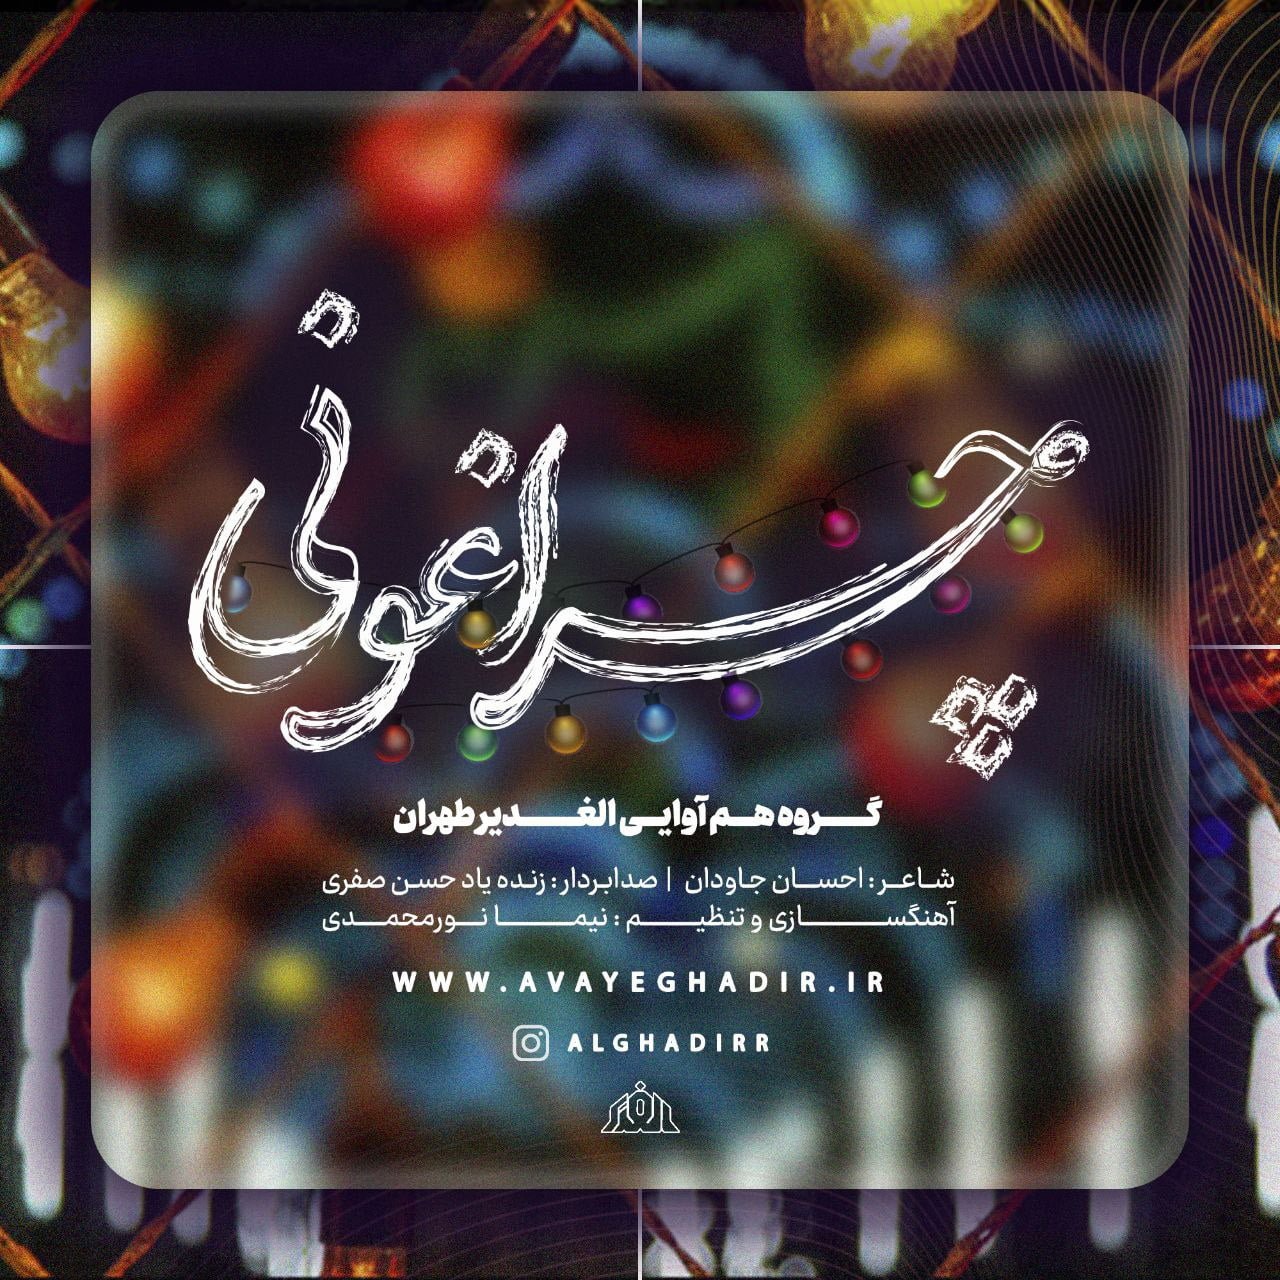 دانلود آهنگ جدید گروه هم آوایی الغدیر طهران با عنوان چراغونی